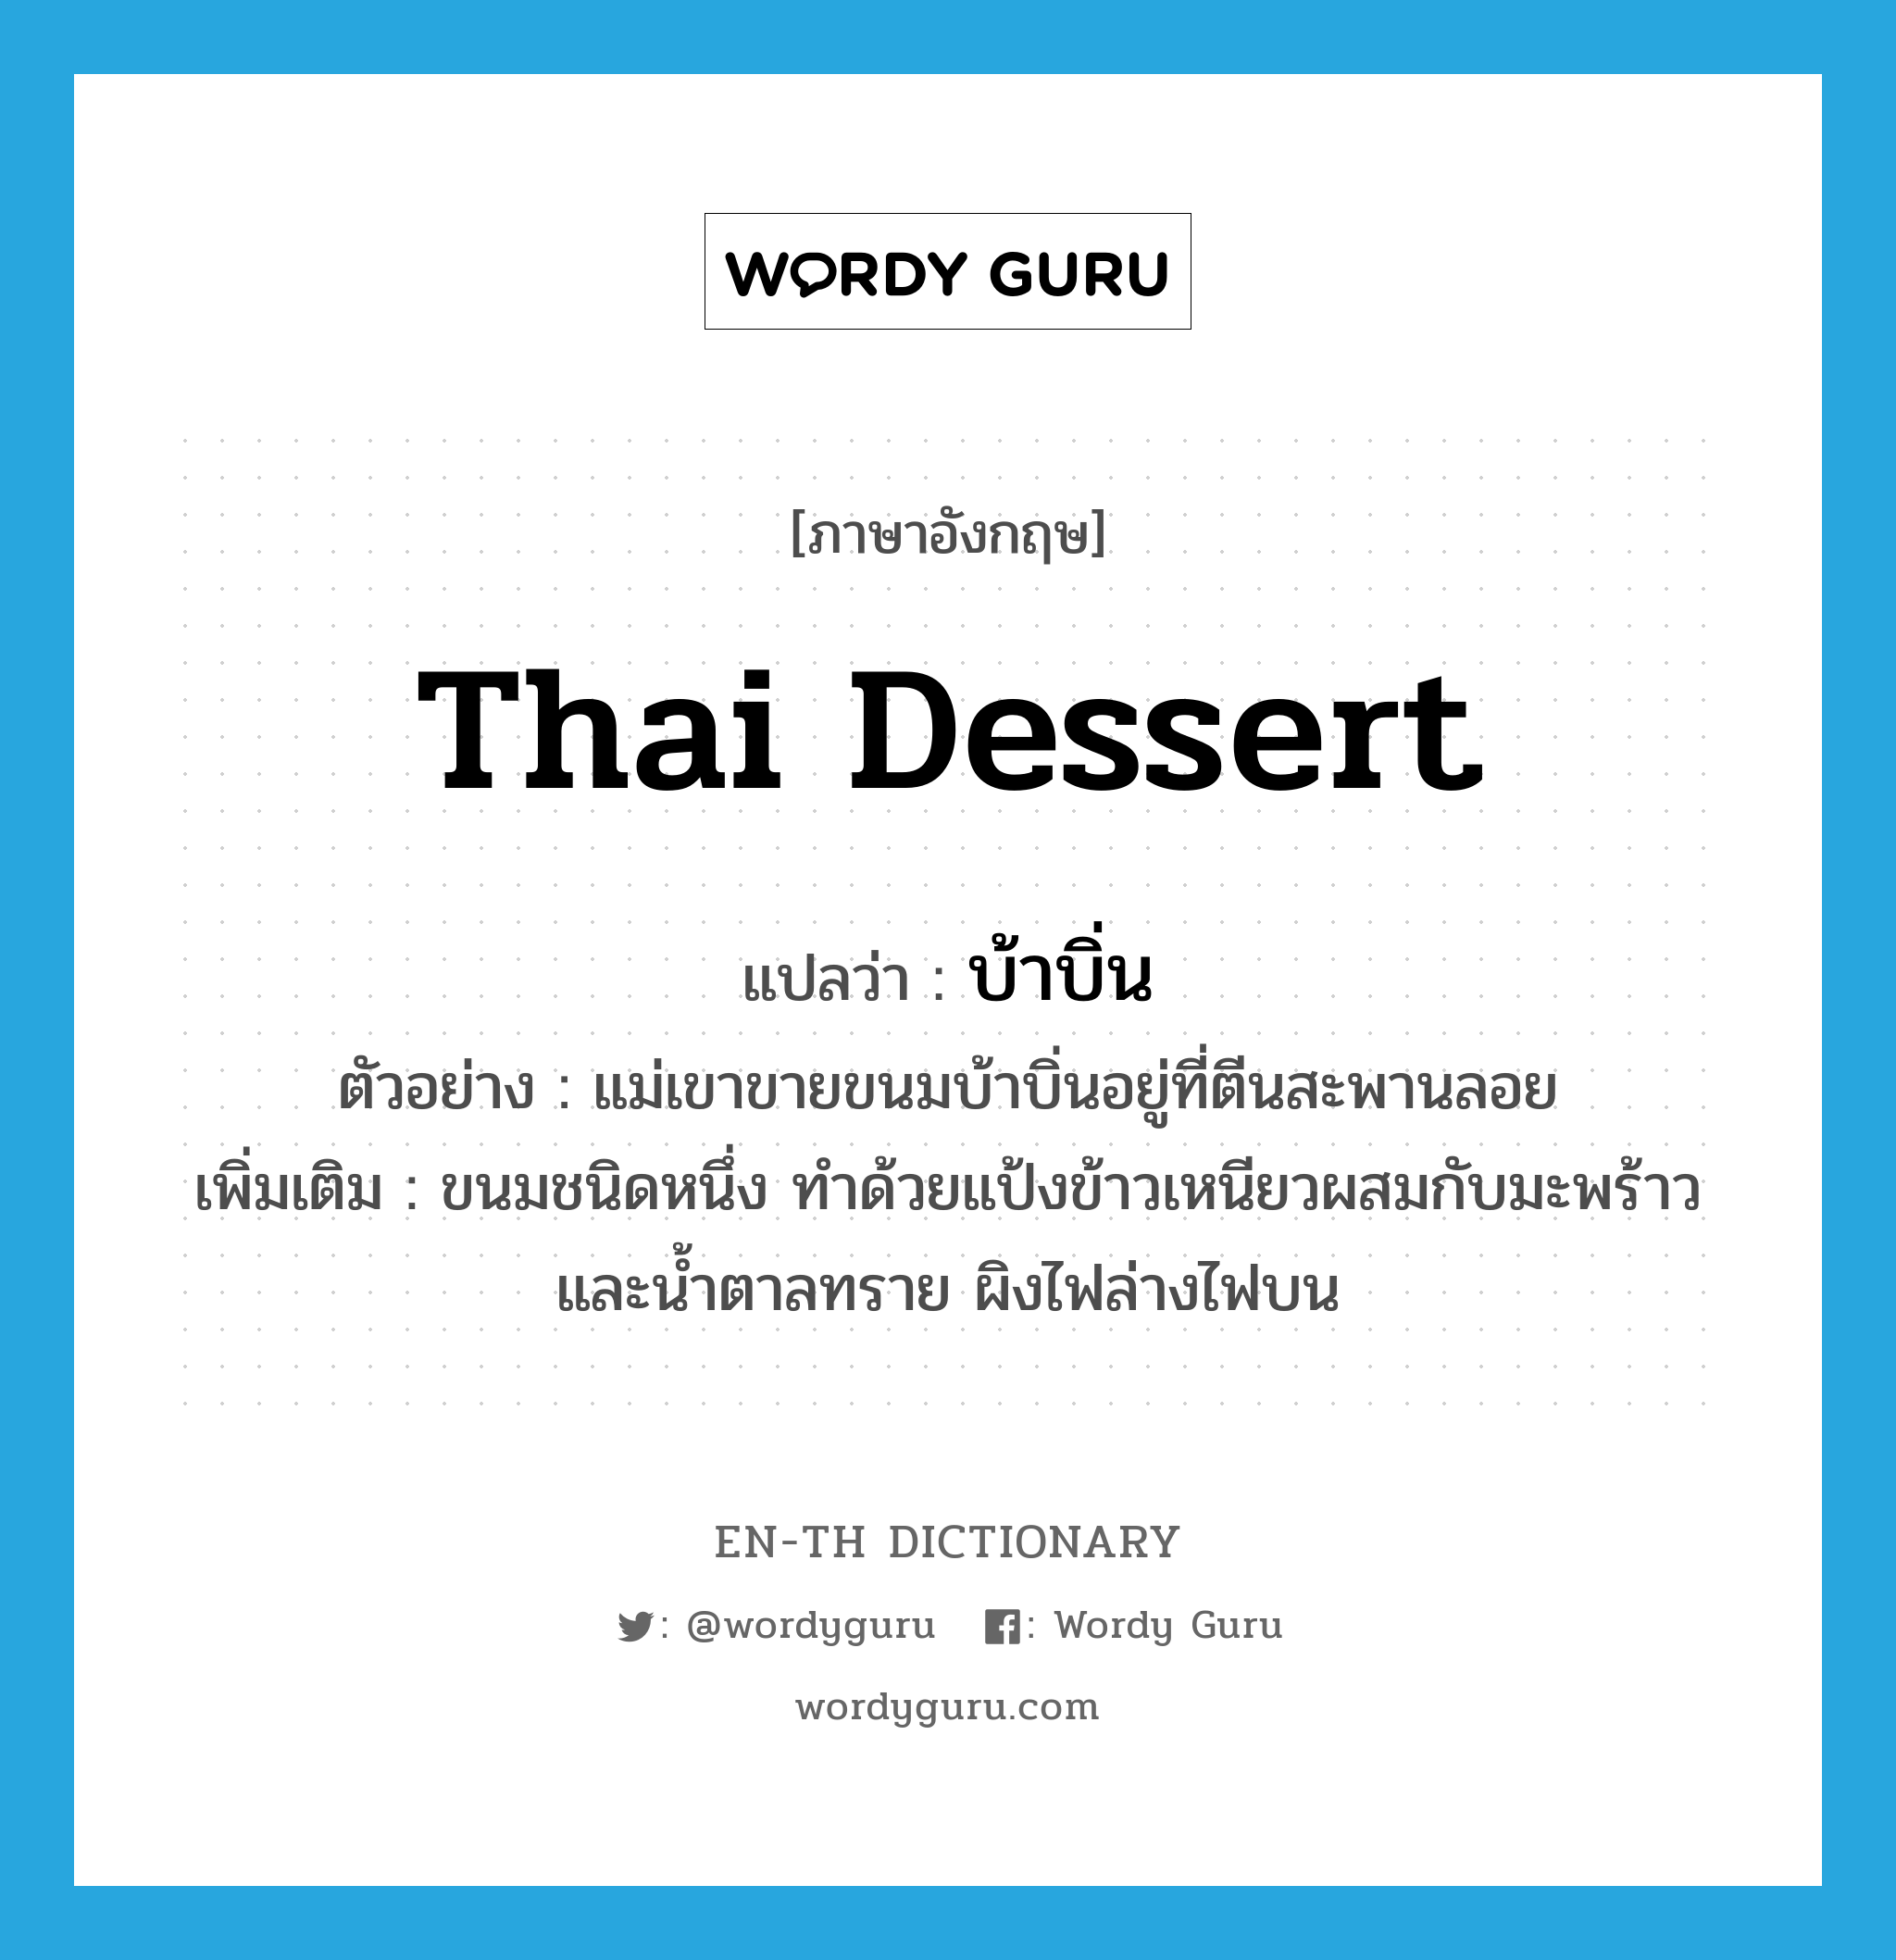 บ้าบิ่น ภาษาอังกฤษ?, คำศัพท์ภาษาอังกฤษ บ้าบิ่น แปลว่า Thai dessert ประเภท N ตัวอย่าง แม่เขาขายขนมบ้าบิ่นอยู่ที่ตีนสะพานลอย เพิ่มเติม ขนมชนิดหนึ่ง ทำด้วยแป้งข้าวเหนียวผสมกับมะพร้าวและน้ำตาลทราย ผิงไฟล่างไฟบน หมวด N